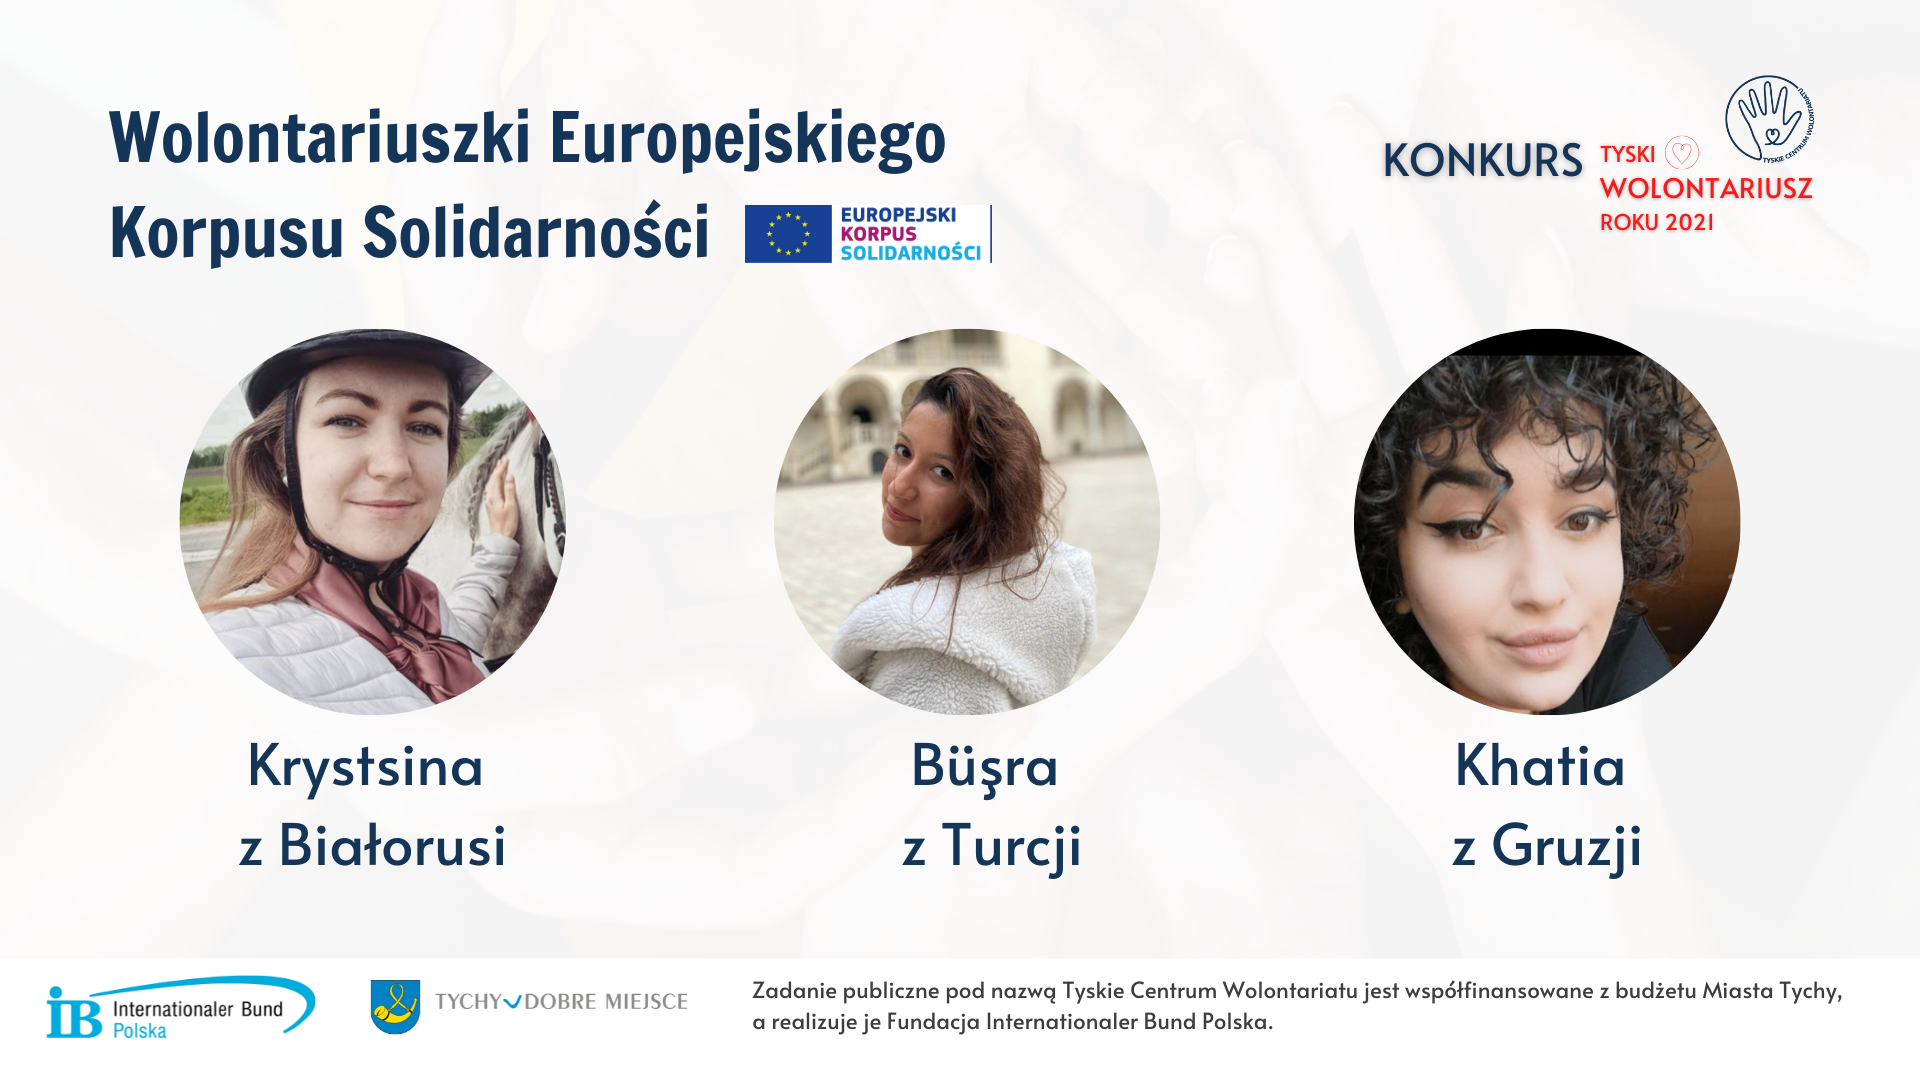  Prezentacja Konkurs Tyski Wolontariusz Roku - wolontariuszki Europejskiego Korpusu Solidarności